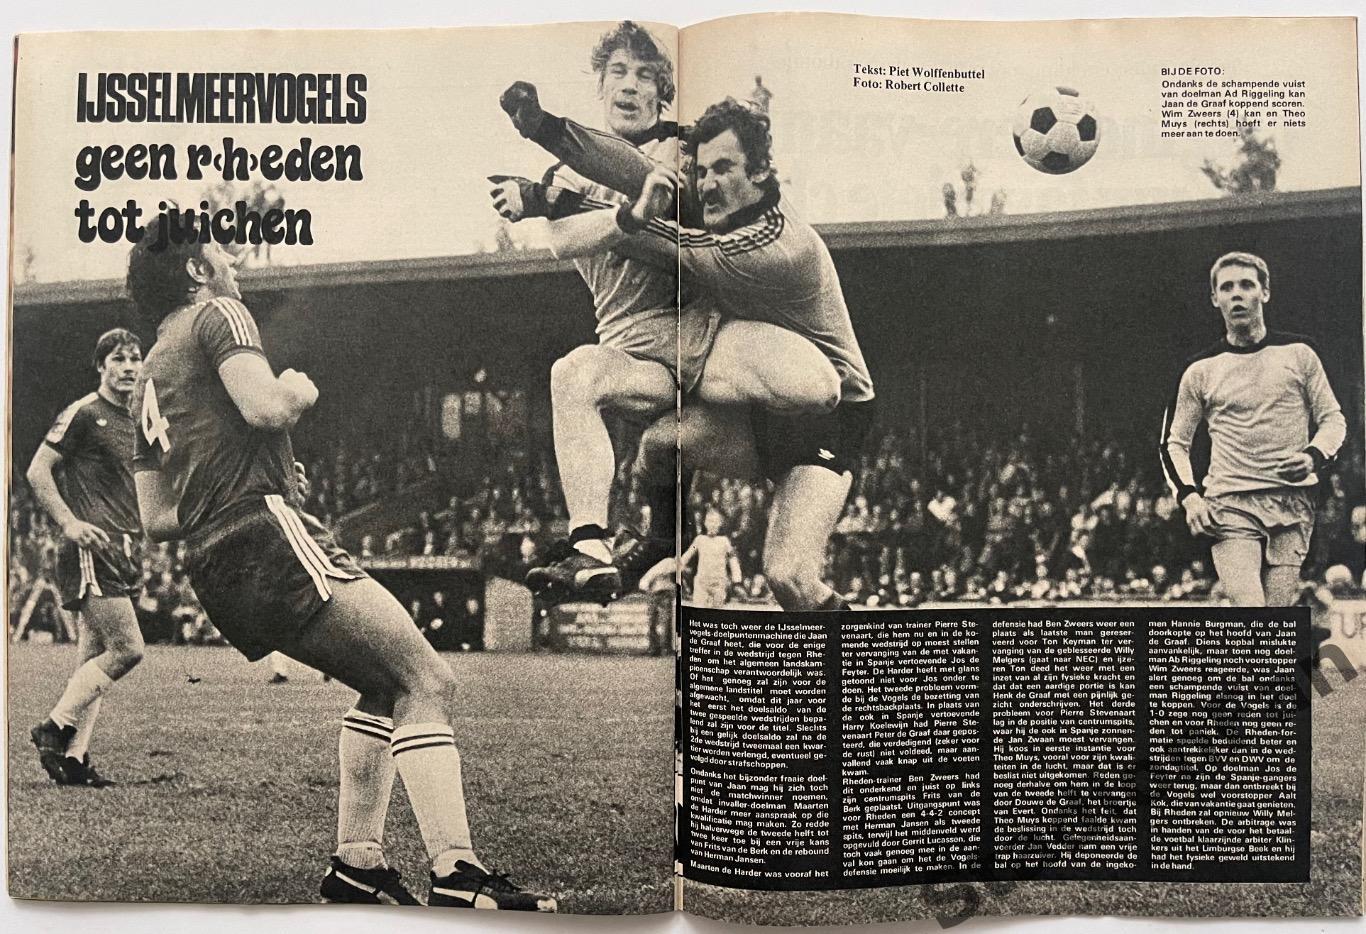 Журнал Voetbal nr.25 - 1977 год. 4